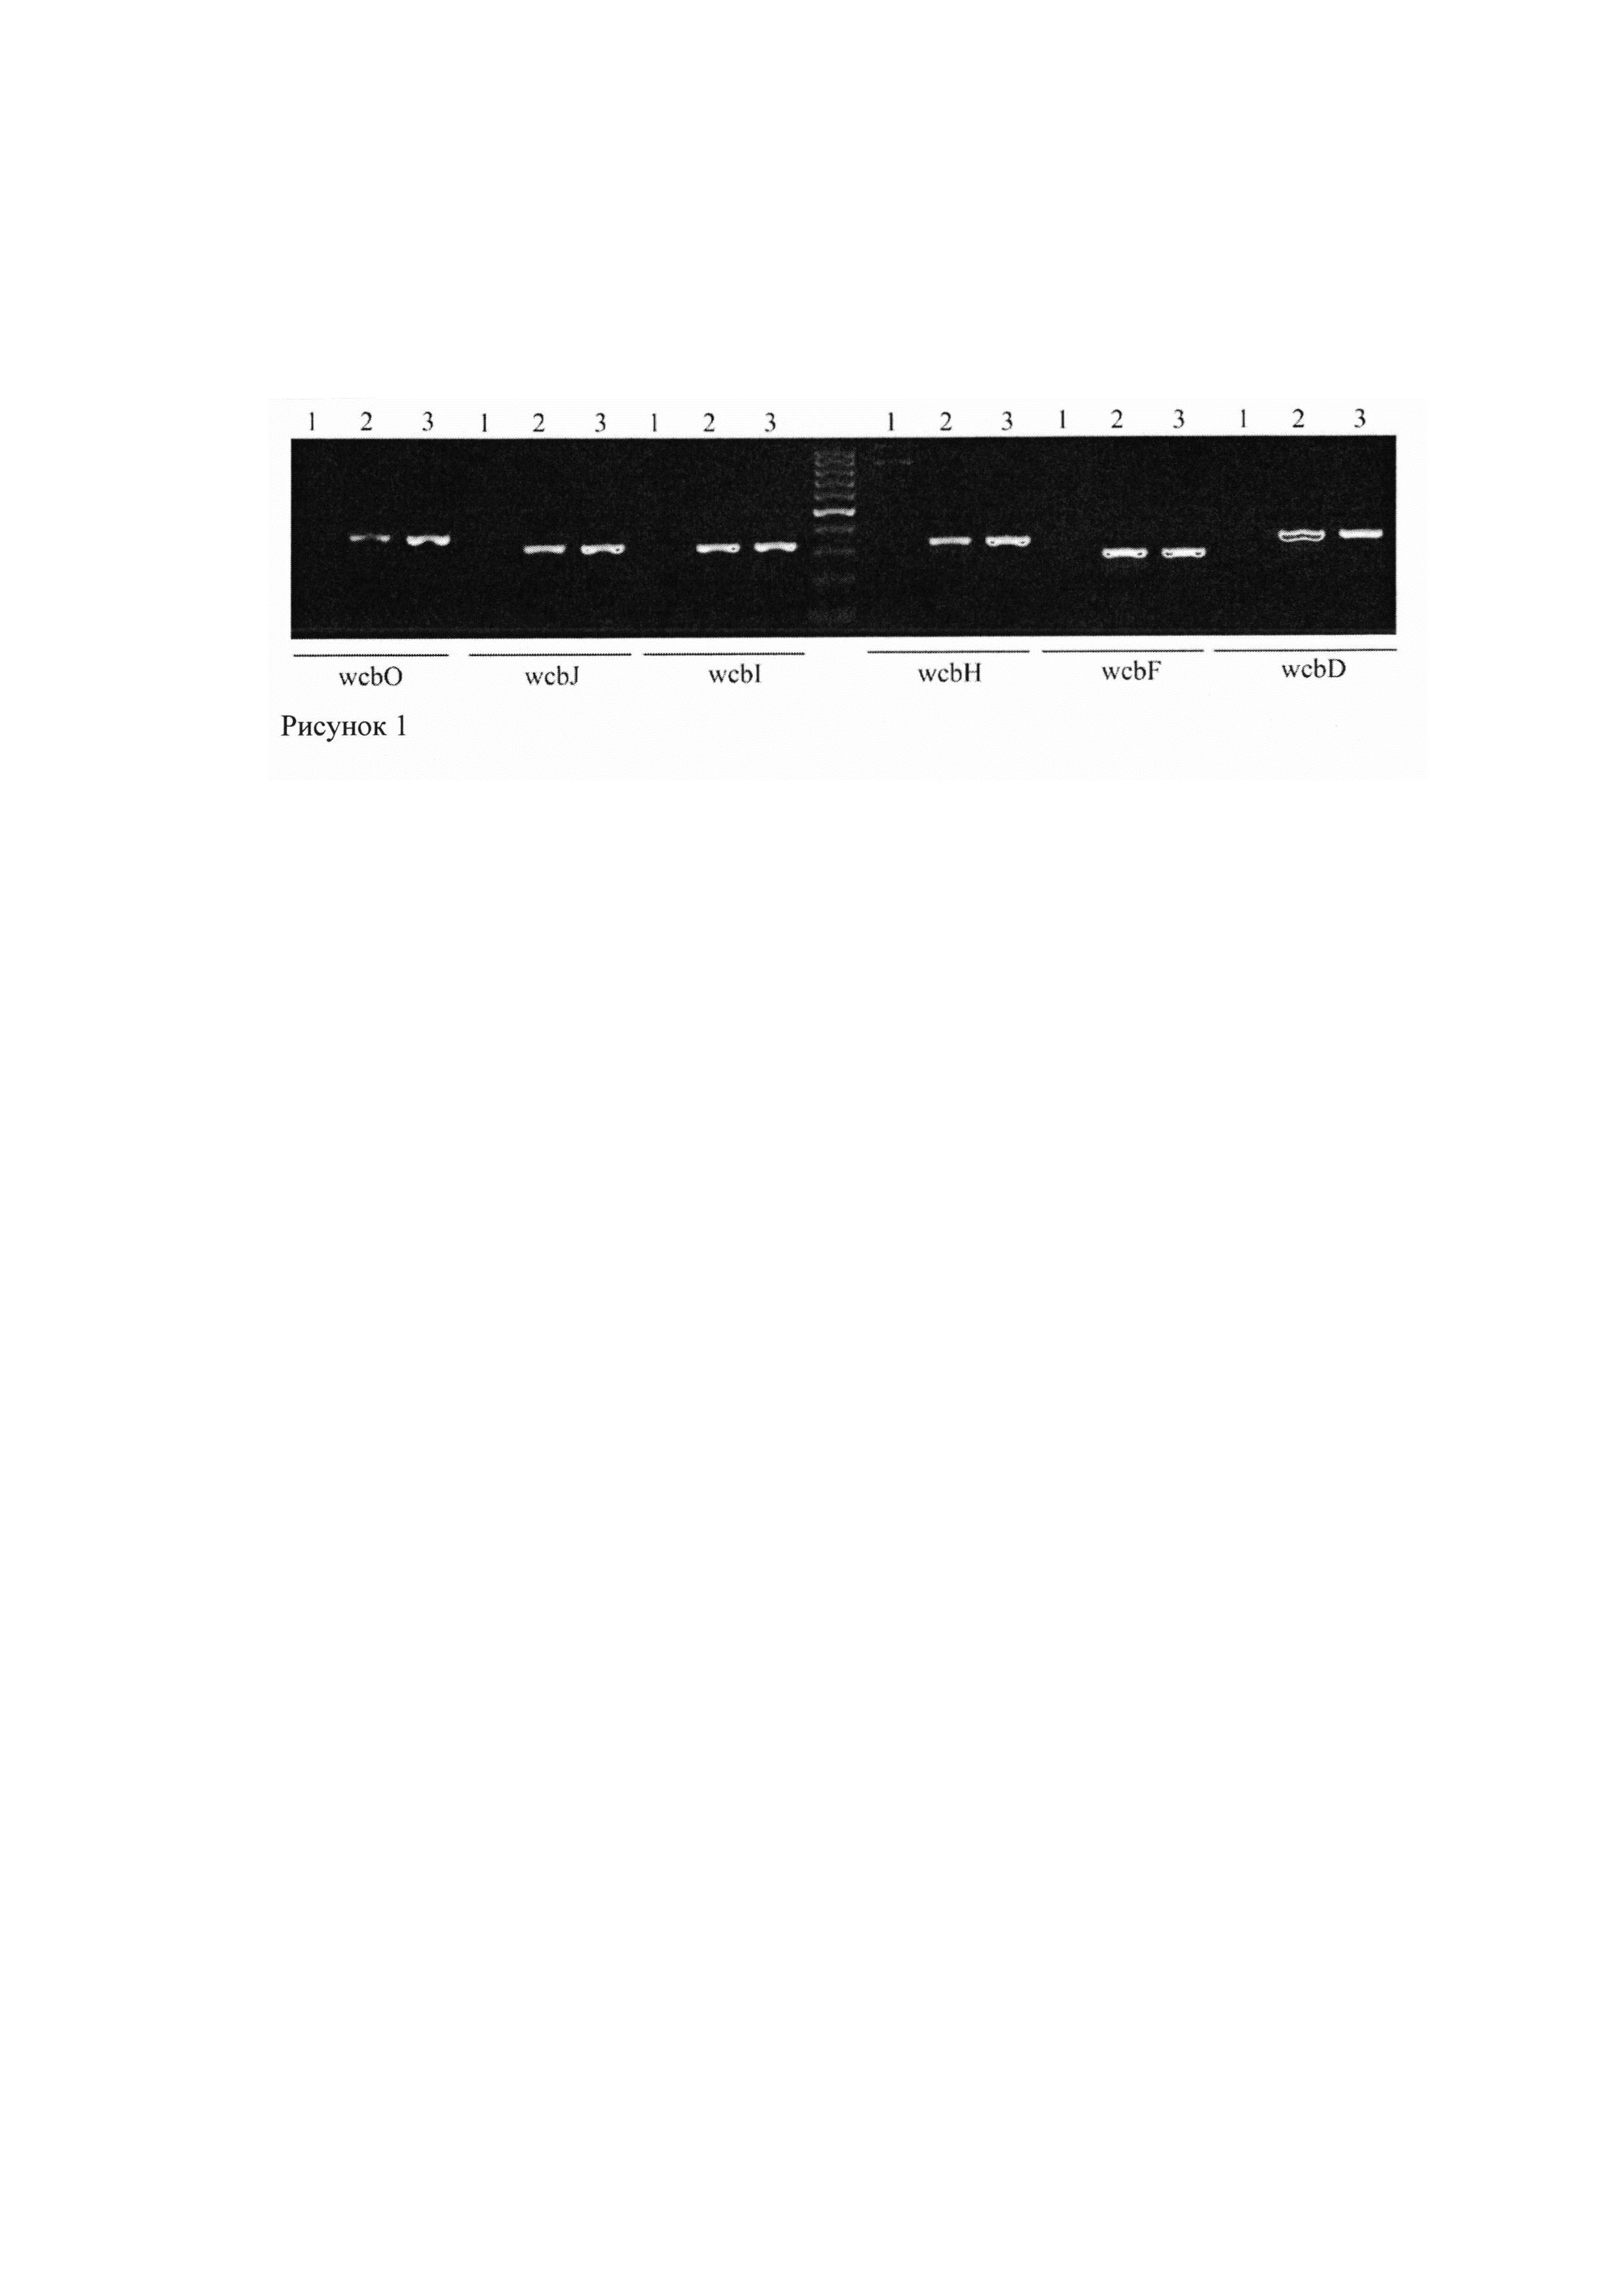 Набор олигонуклеотидных праймеров для выявления вариантных штаммов Burkholderia thailandensis, содержащих кластер генов биосинтеза капсульного полисахарида, высоко гомологичный Burkholderia pseudomallei